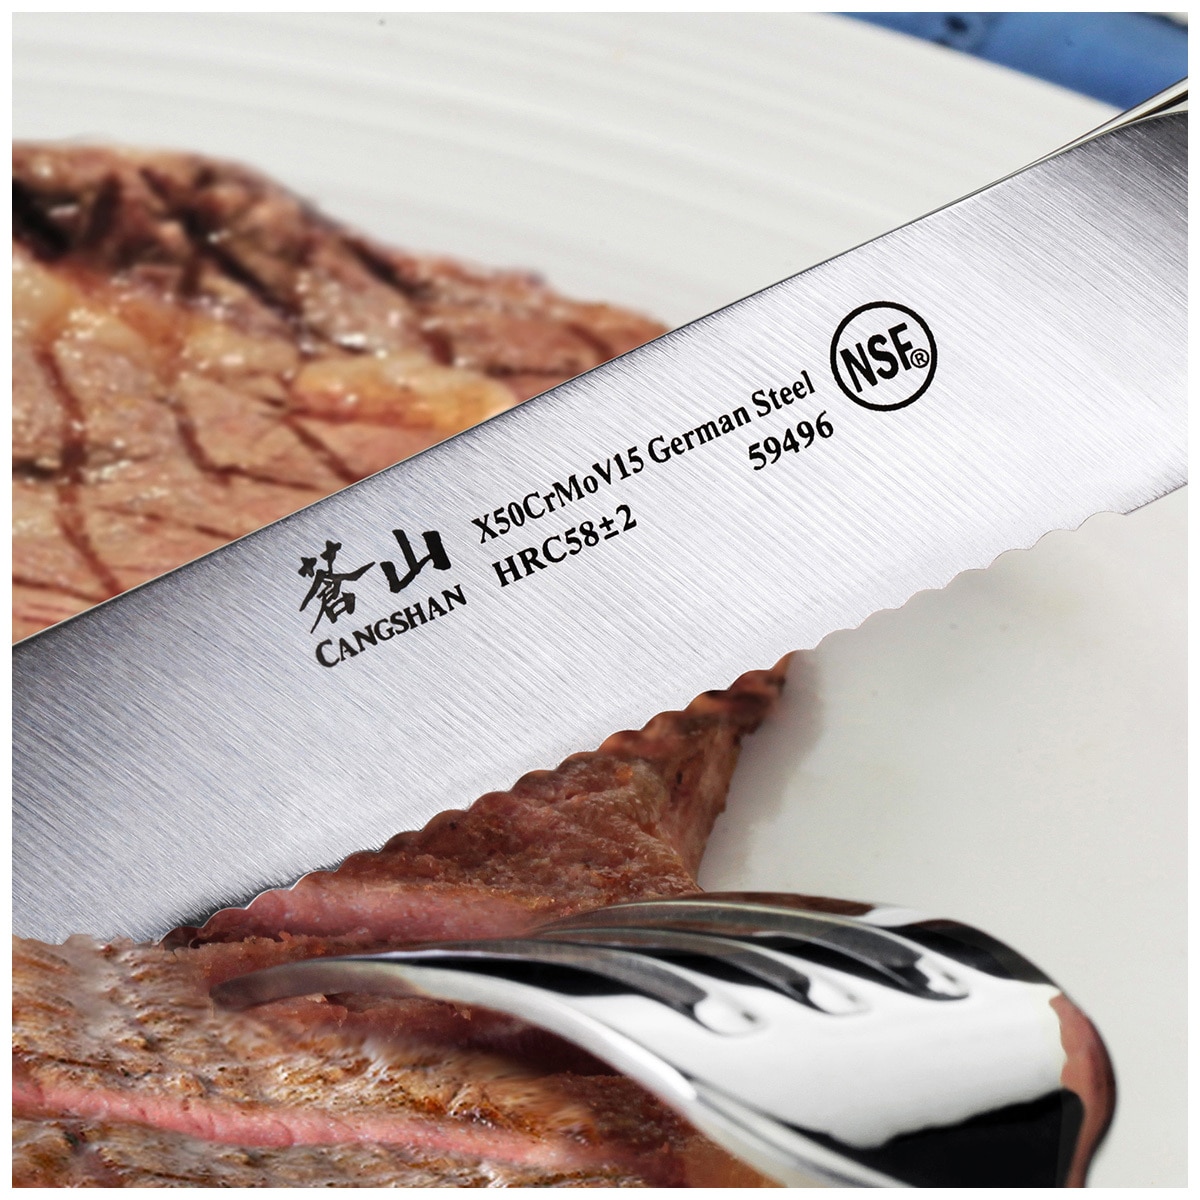 Cangshan N1 Series German Steel Forged 4-Piece Steak Knife Set